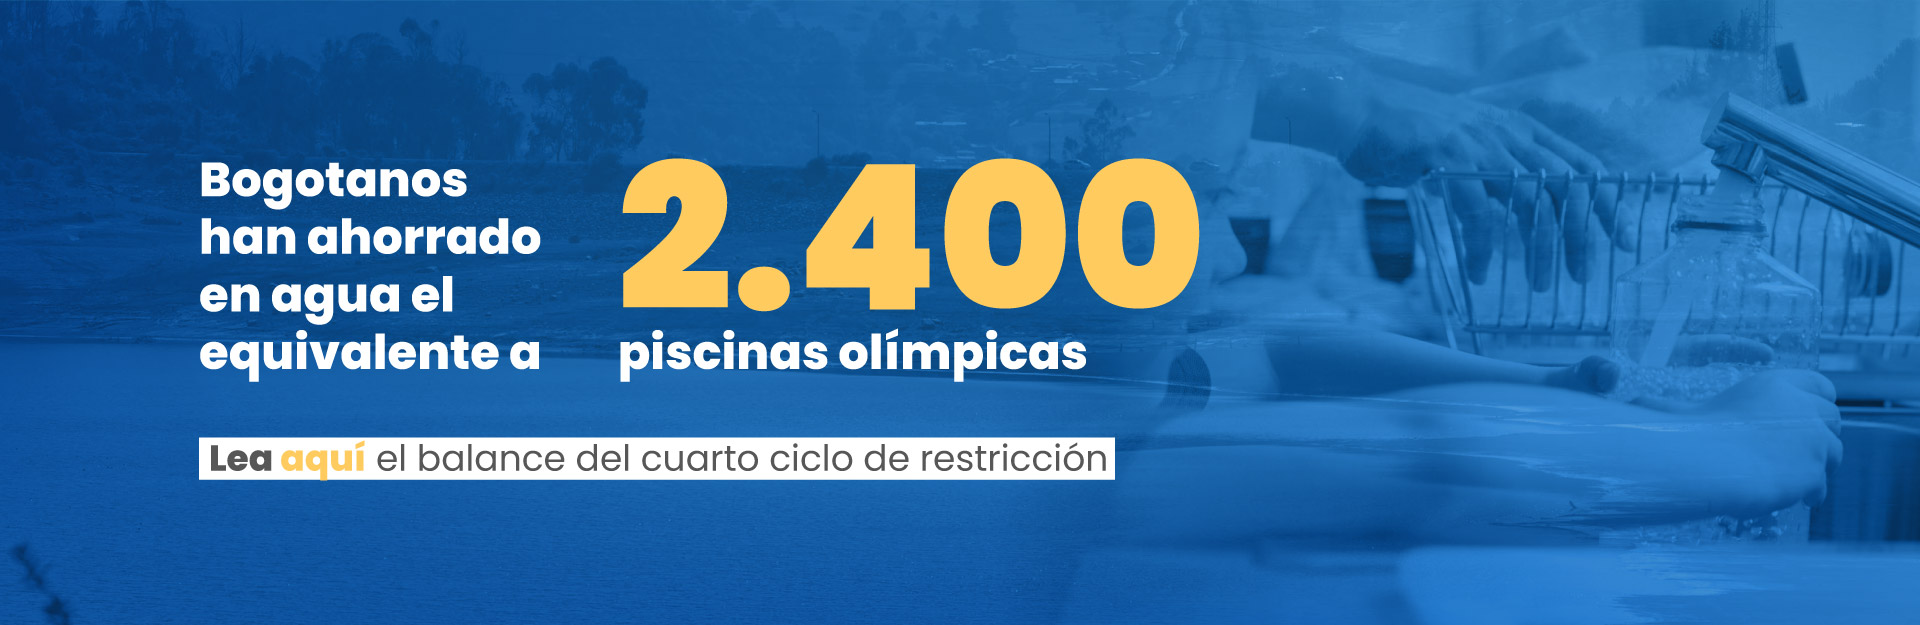 Bogotanos han ahorrado en agua el equivalente a 2.400 piscinas olímpicas